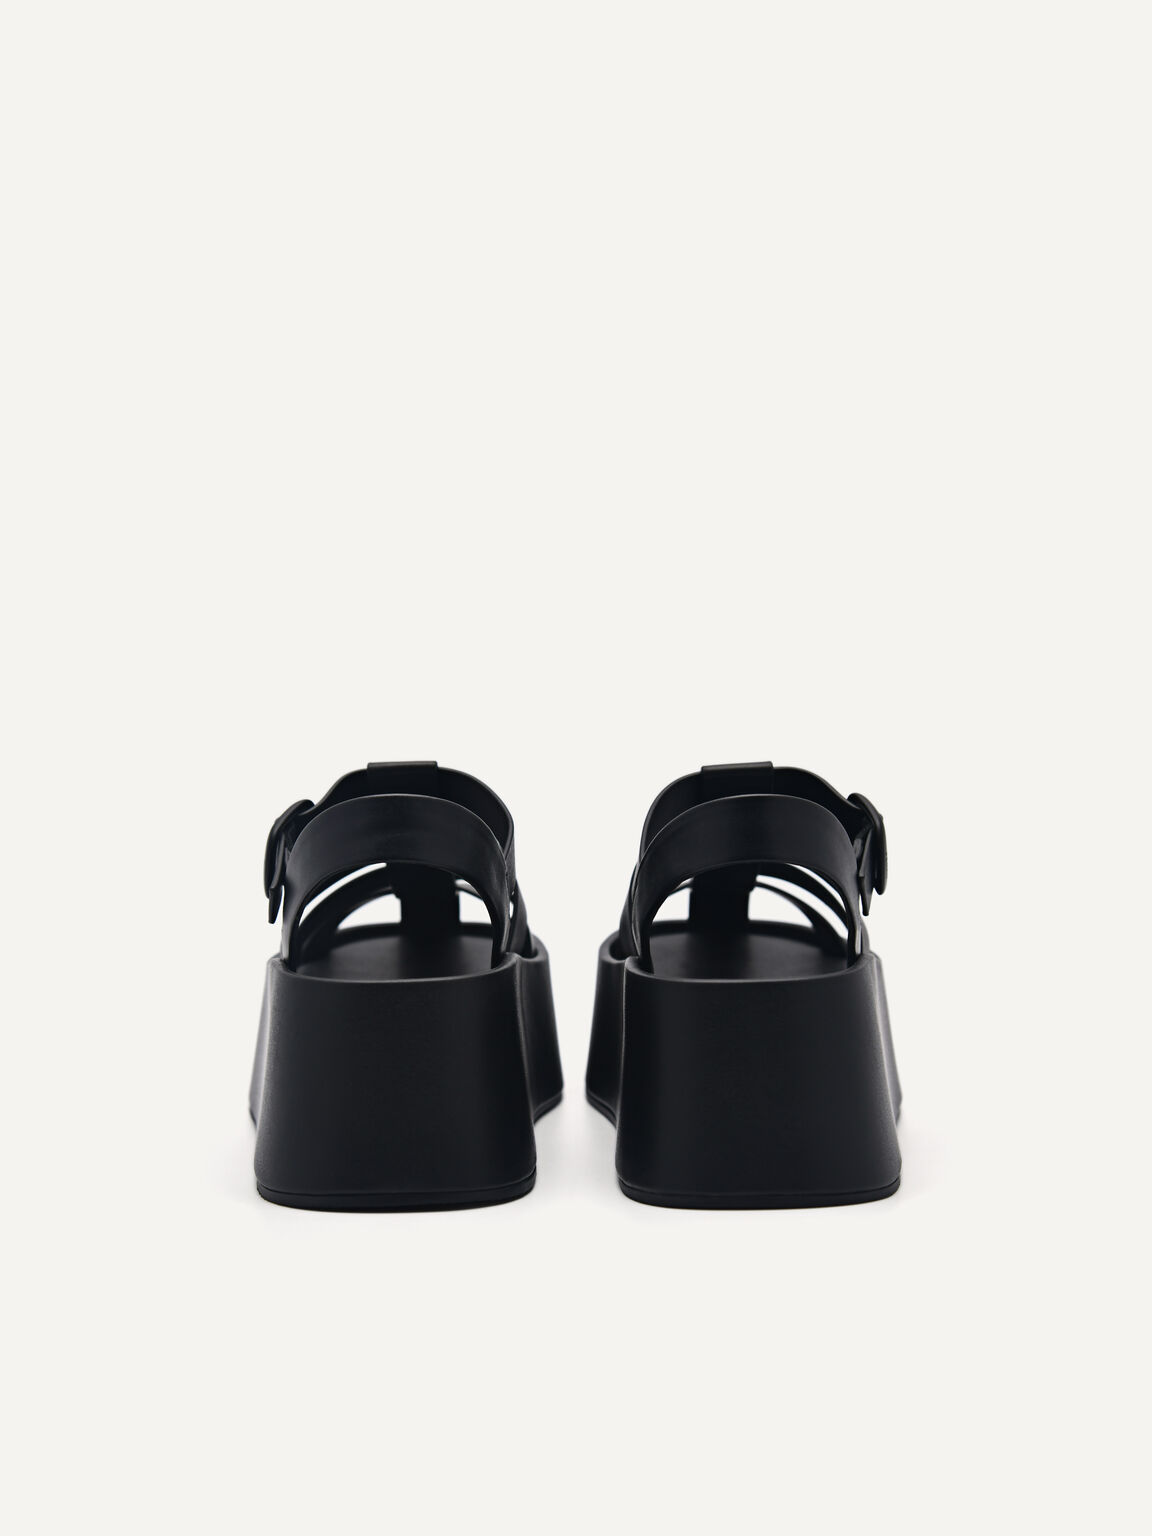 Palma Platform Sandals, Black, hi-res